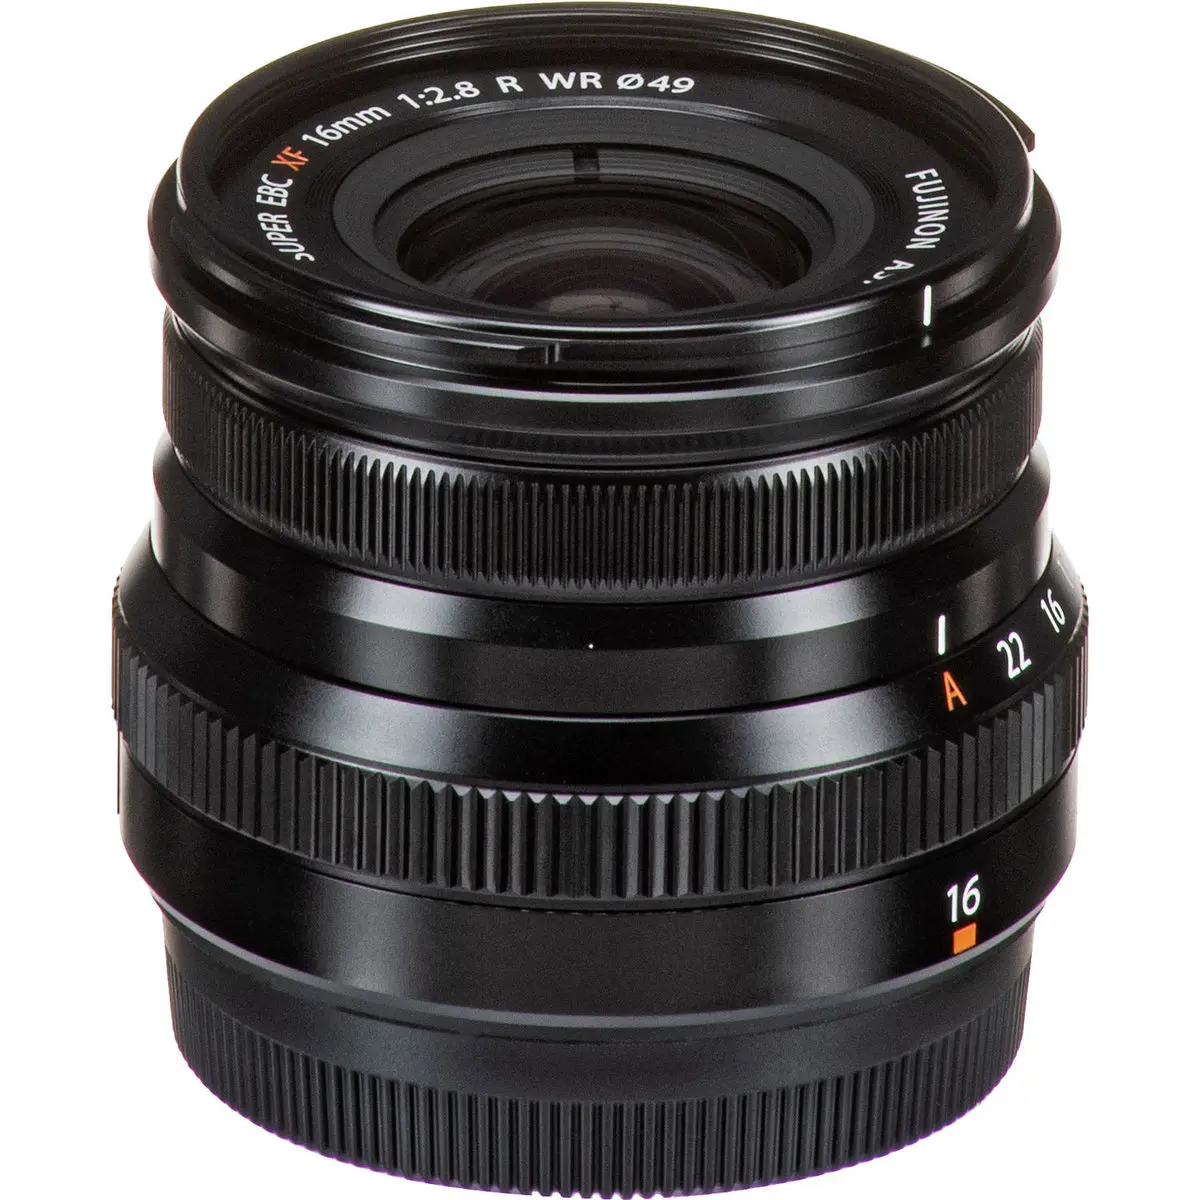 7. FUJINON XF 16mm F2.8 R WR Black Lens